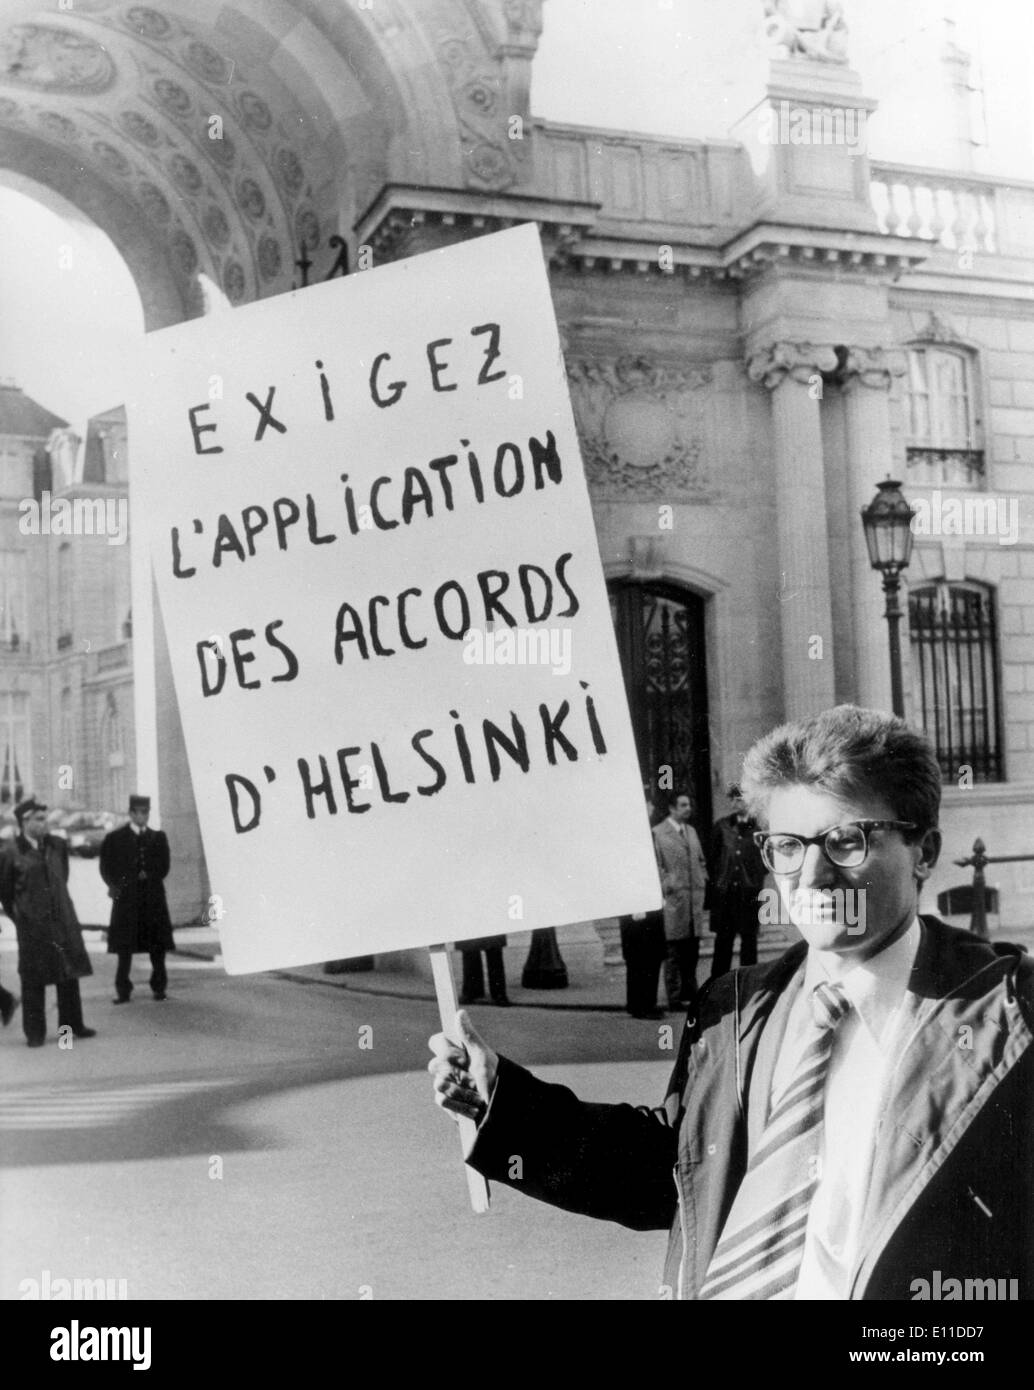 Feb 25, 1977; Paris, Francia; il dissidente storico sovietico il sig. ANDREI AMALRIK, che ha chiesto di vedere il presidente francese per protestare contro il trattamento sovietica di altri dissidenti. Egli è stato portato dall'entrata dell'Elysee Palace dalla polizia, come egli ha cercato di lanciare la sua campagna di protesta. La foto mostra Andrei Amalrik al di fuori dell'Elysee Palace con il suo plackard prima che egli ha cercato di entrare. Foto Stock